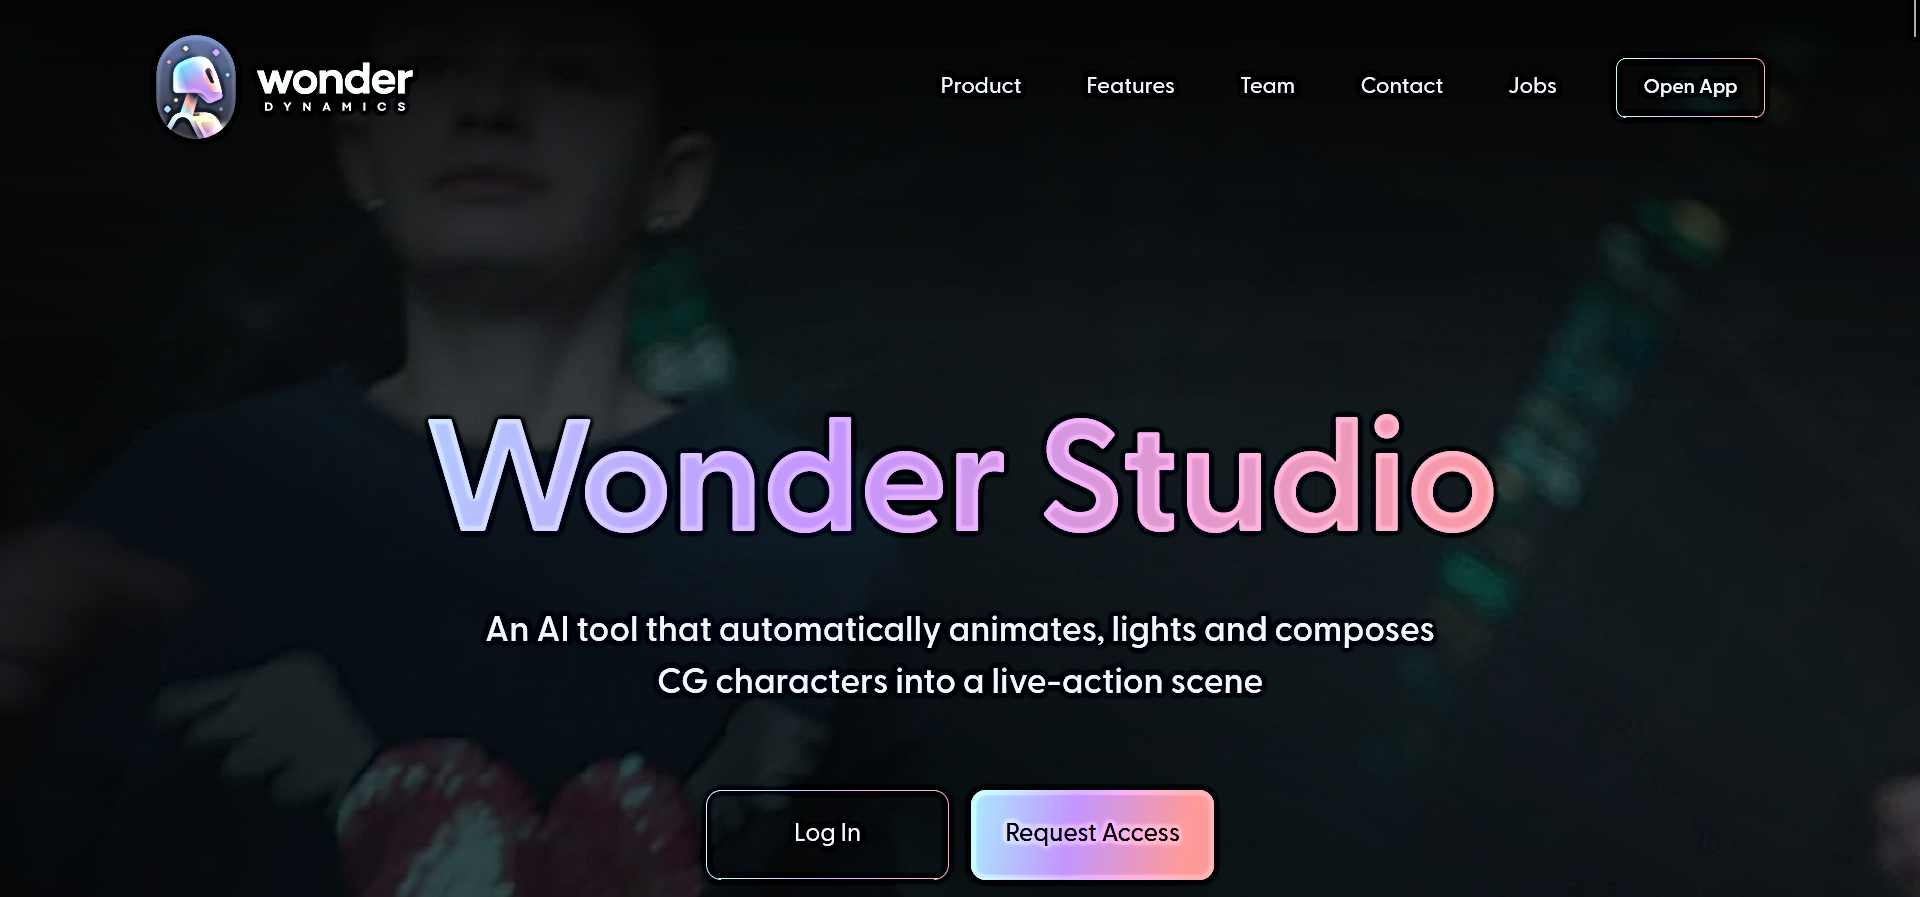 Wonder Studio featured